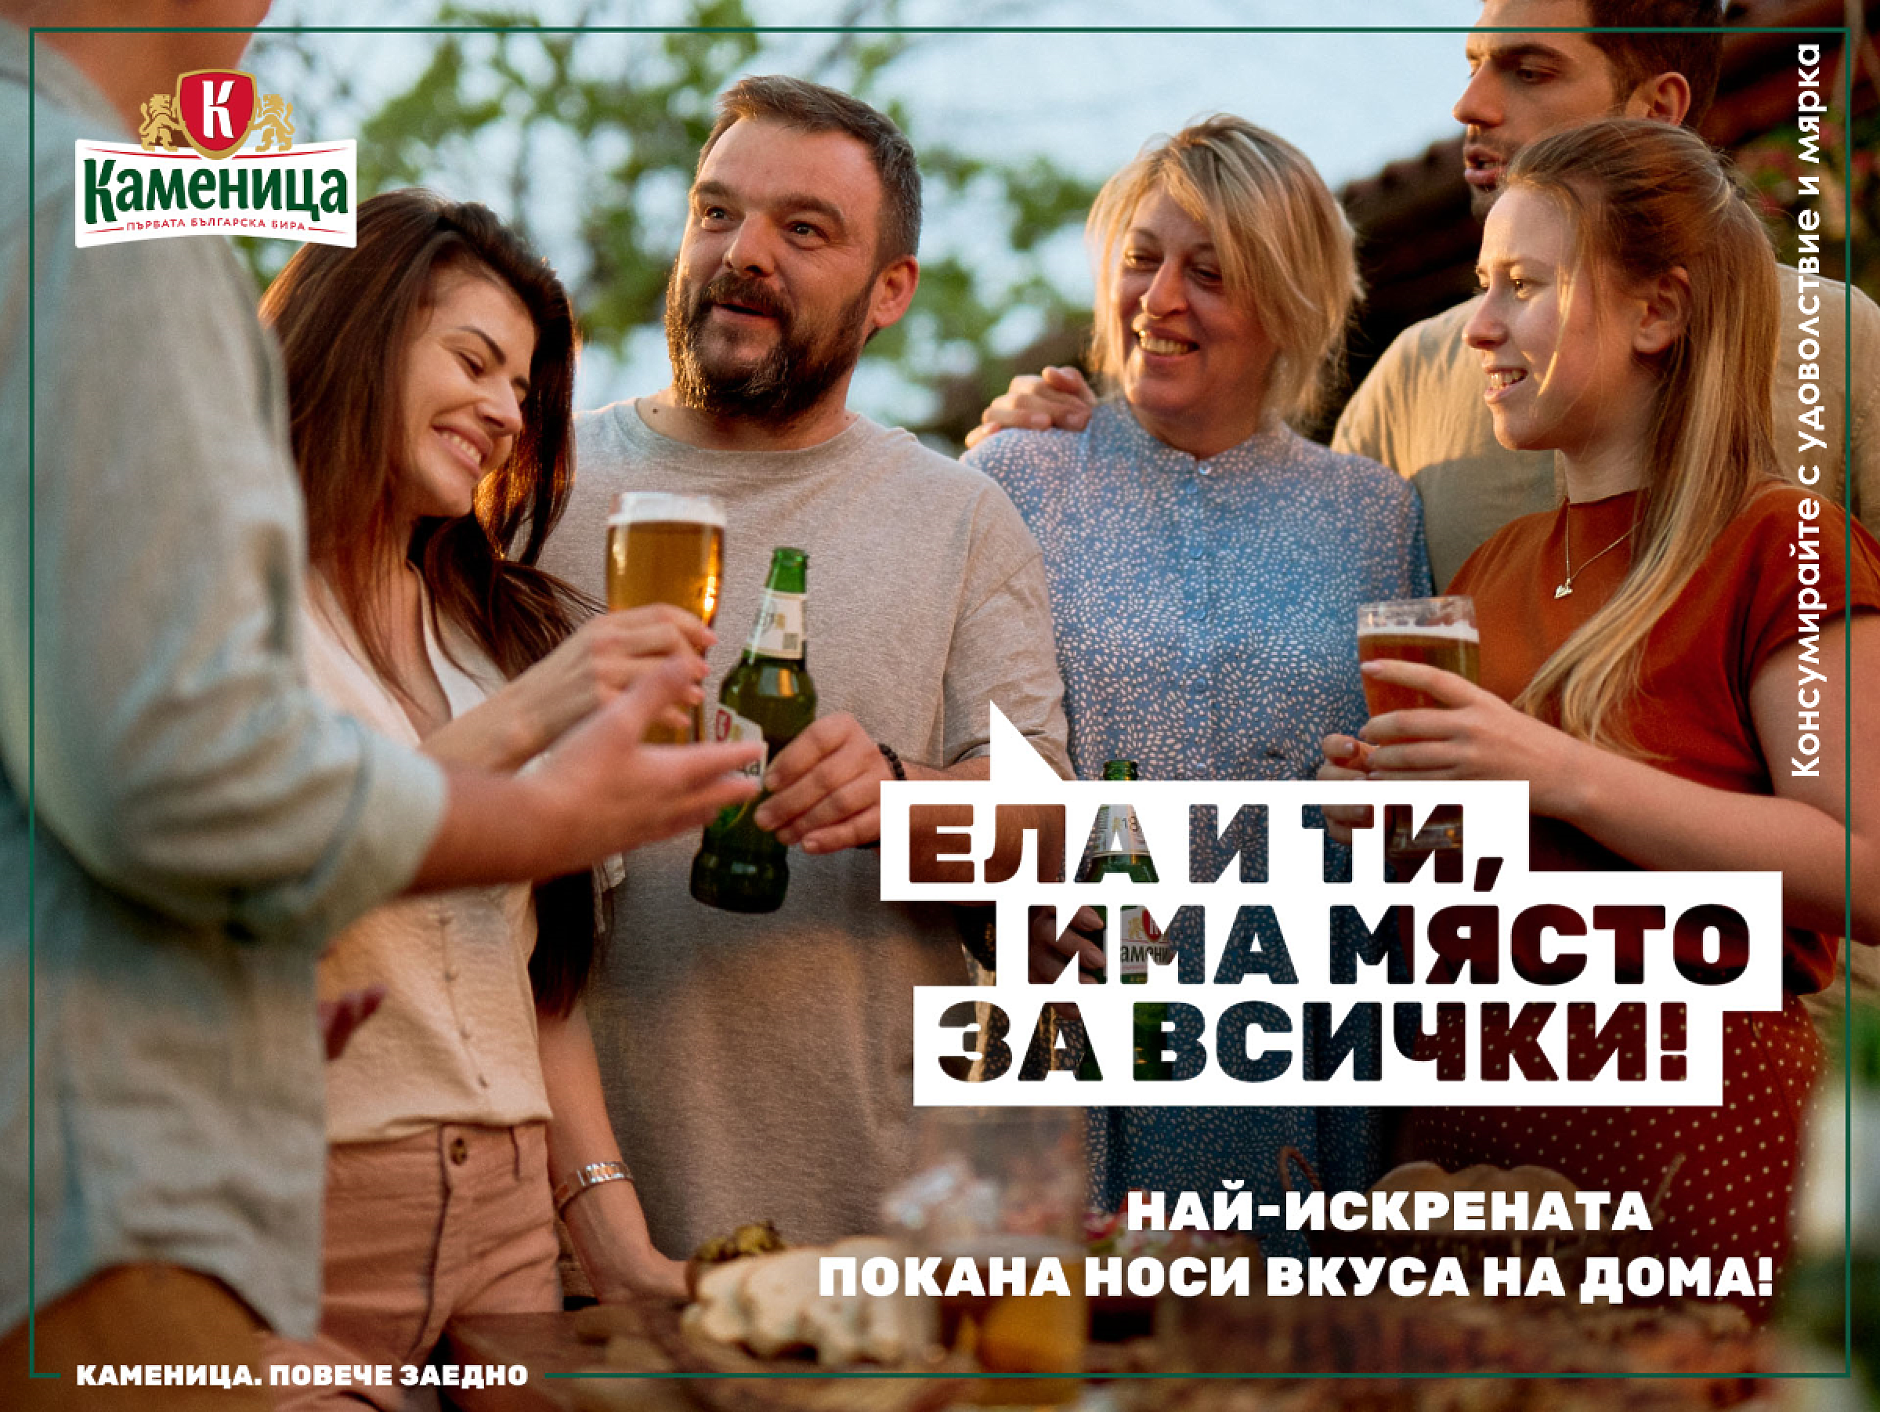 Първата бира на България с ново позициониране на пазара